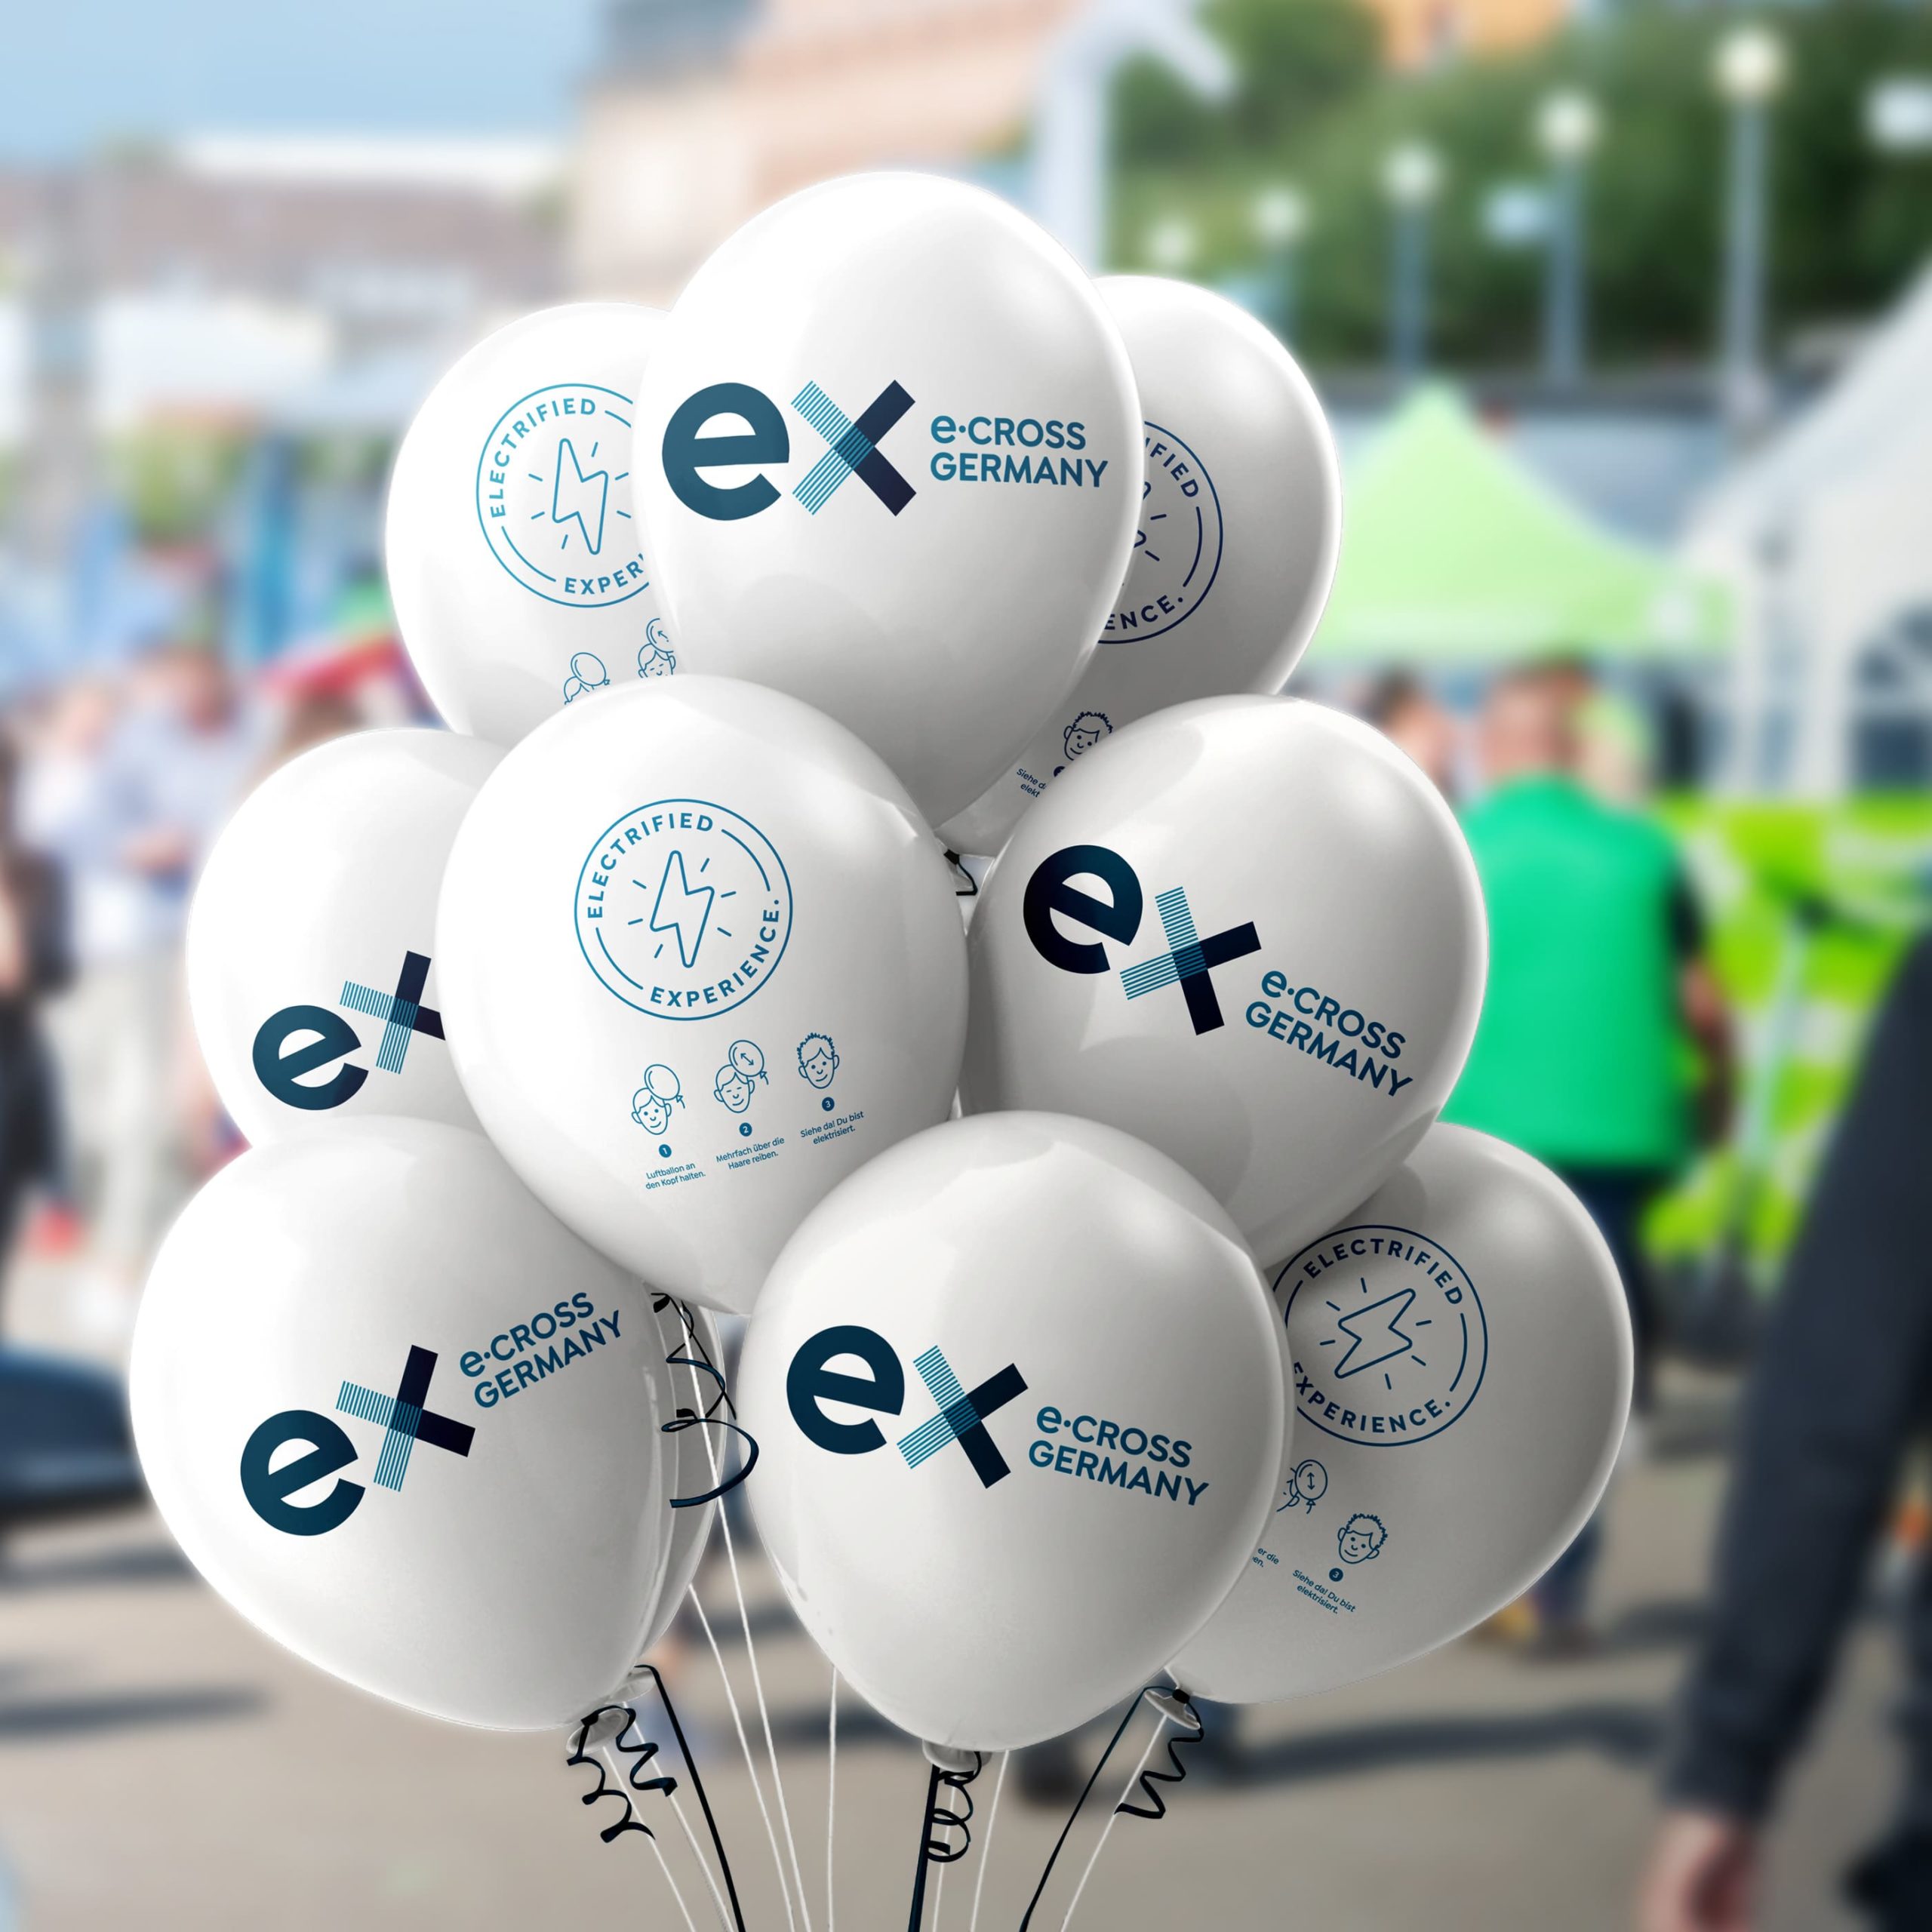 Ein Bündel mit Ballons der e-Cross Germany mit einem Aufruf die eigenen Haare zu elektrisieren.